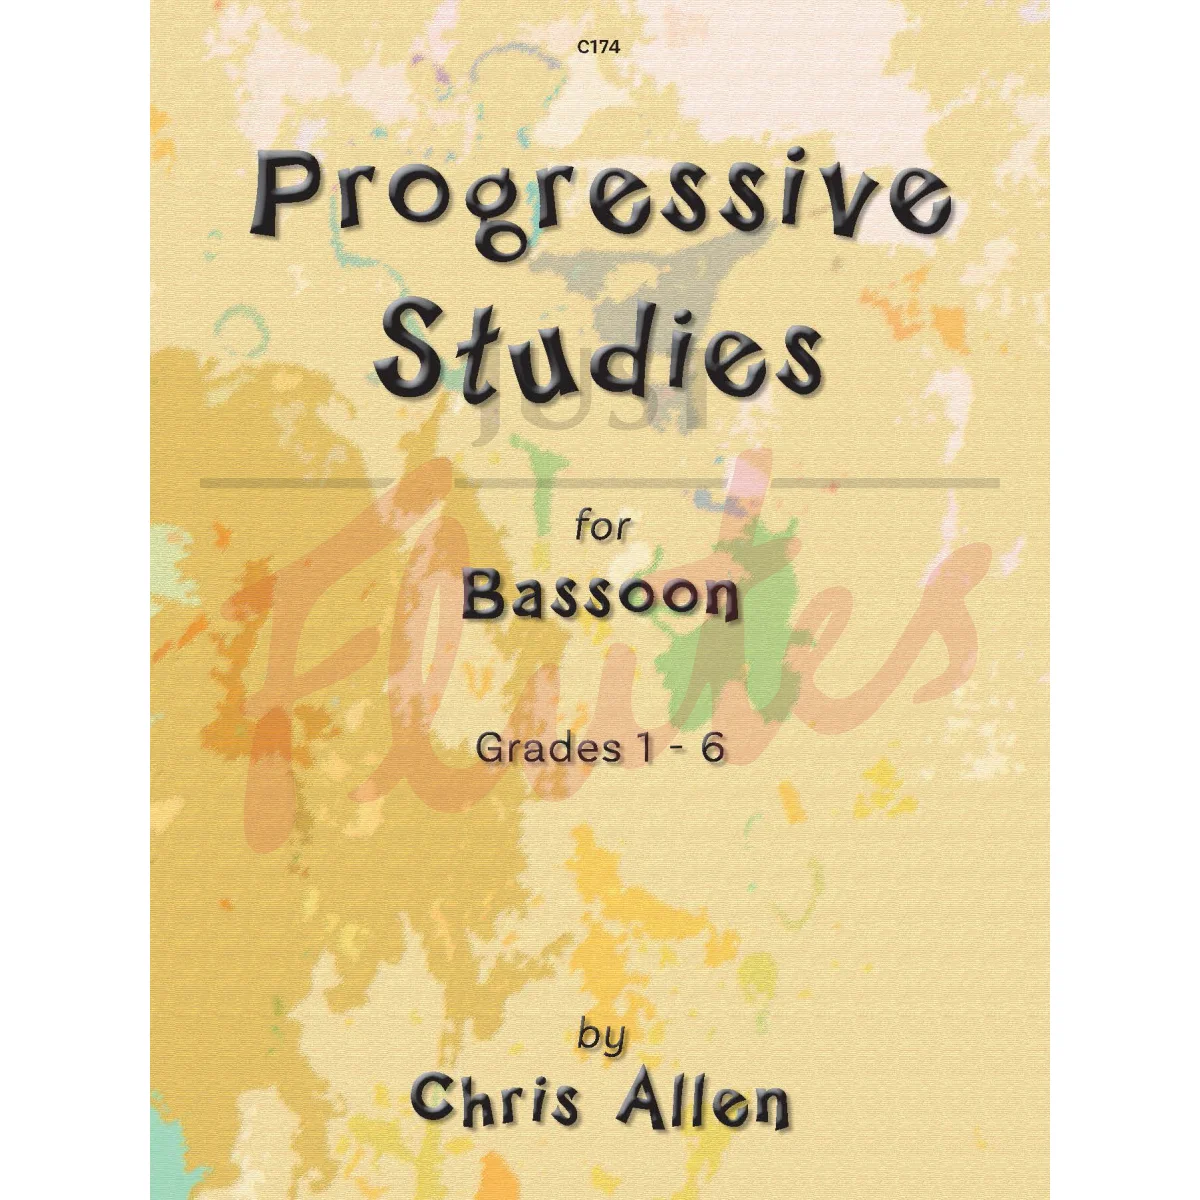 Progressive Studies for Bassoon